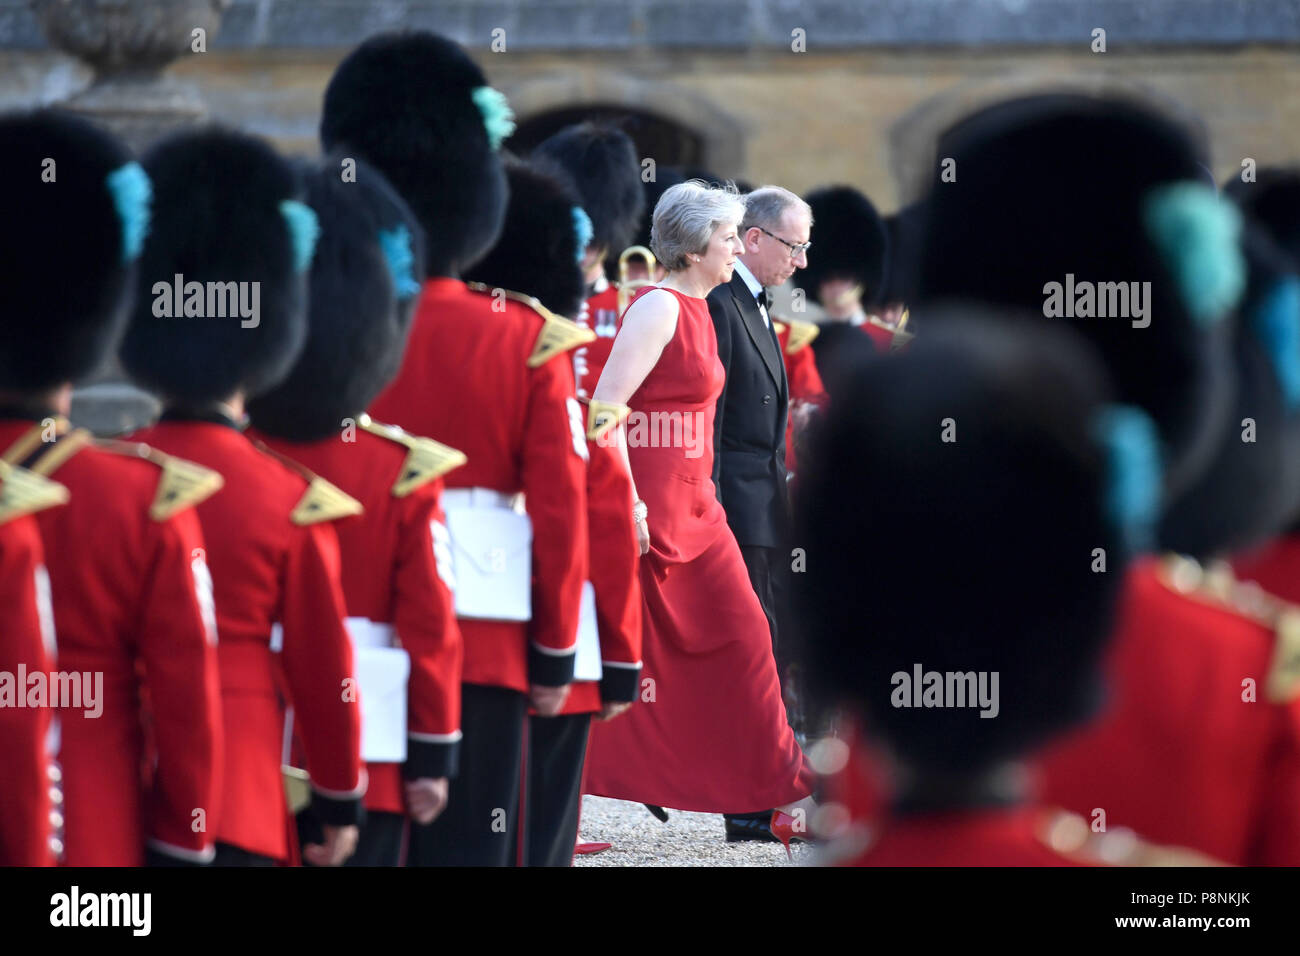 Le président américain, Donald Trump et son épouse Melania sont accueillis par le Premier ministre Theresa Mai et son mari Philip peut à Blenheim Palace, Oxfordshire, où Mme mai sera l'hôte d'un dîner dans le cadre de sa visite au Royaume-Uni. Banque D'Images